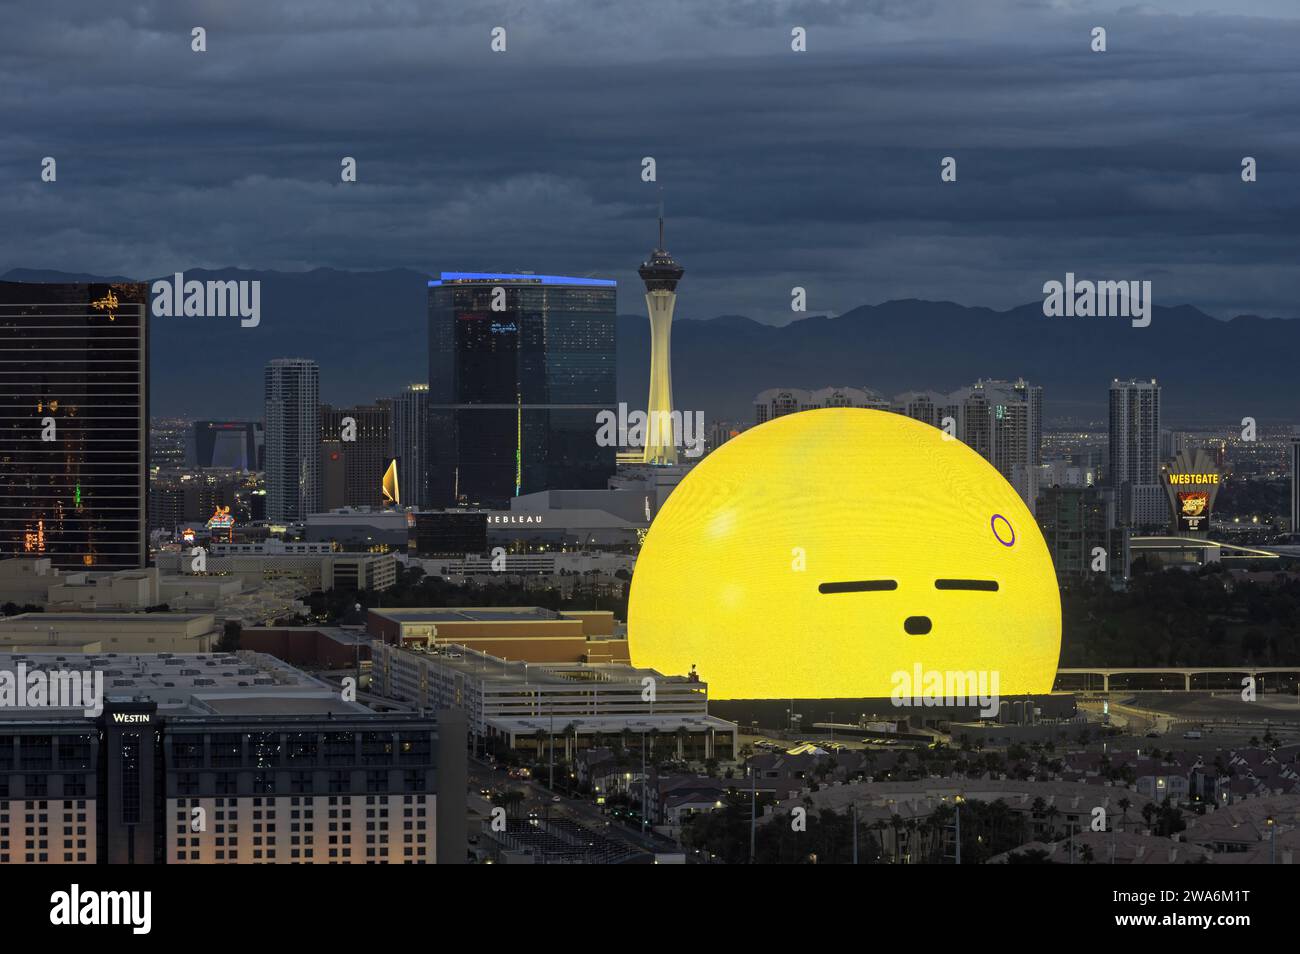 Il paesaggio urbano di Las Vegas al mattino, guardando a nord, tra cui la Sphere, la Strat Tower e Fontainebleau Las Vegas. Foto Stock